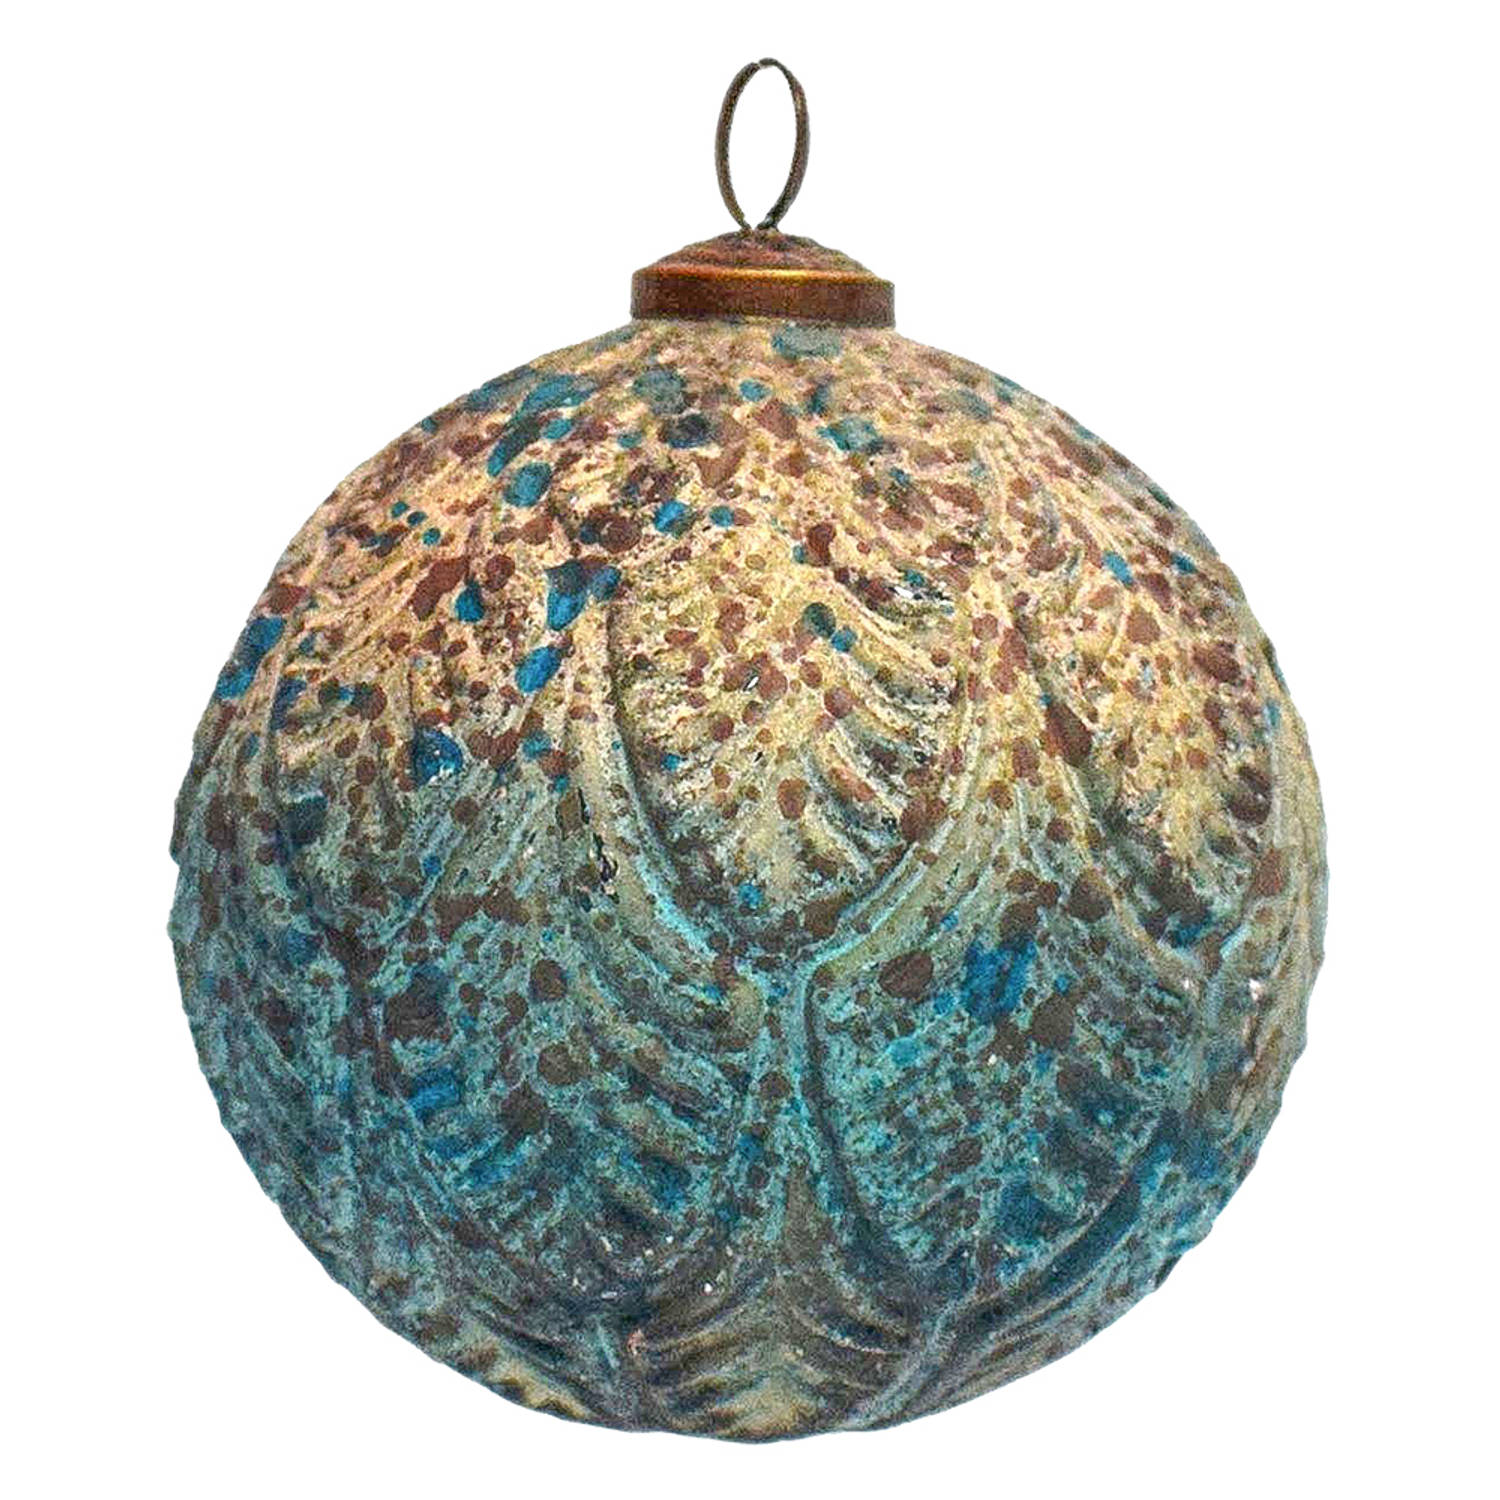 HAES DECO - Kerstbal - Formaat Ø 12x12 cm - Kleur Turquoise - Materiaal Glas - Kerstversiering, Kerstdecoratie, Decoratie Hanger, Kerstboomversiering